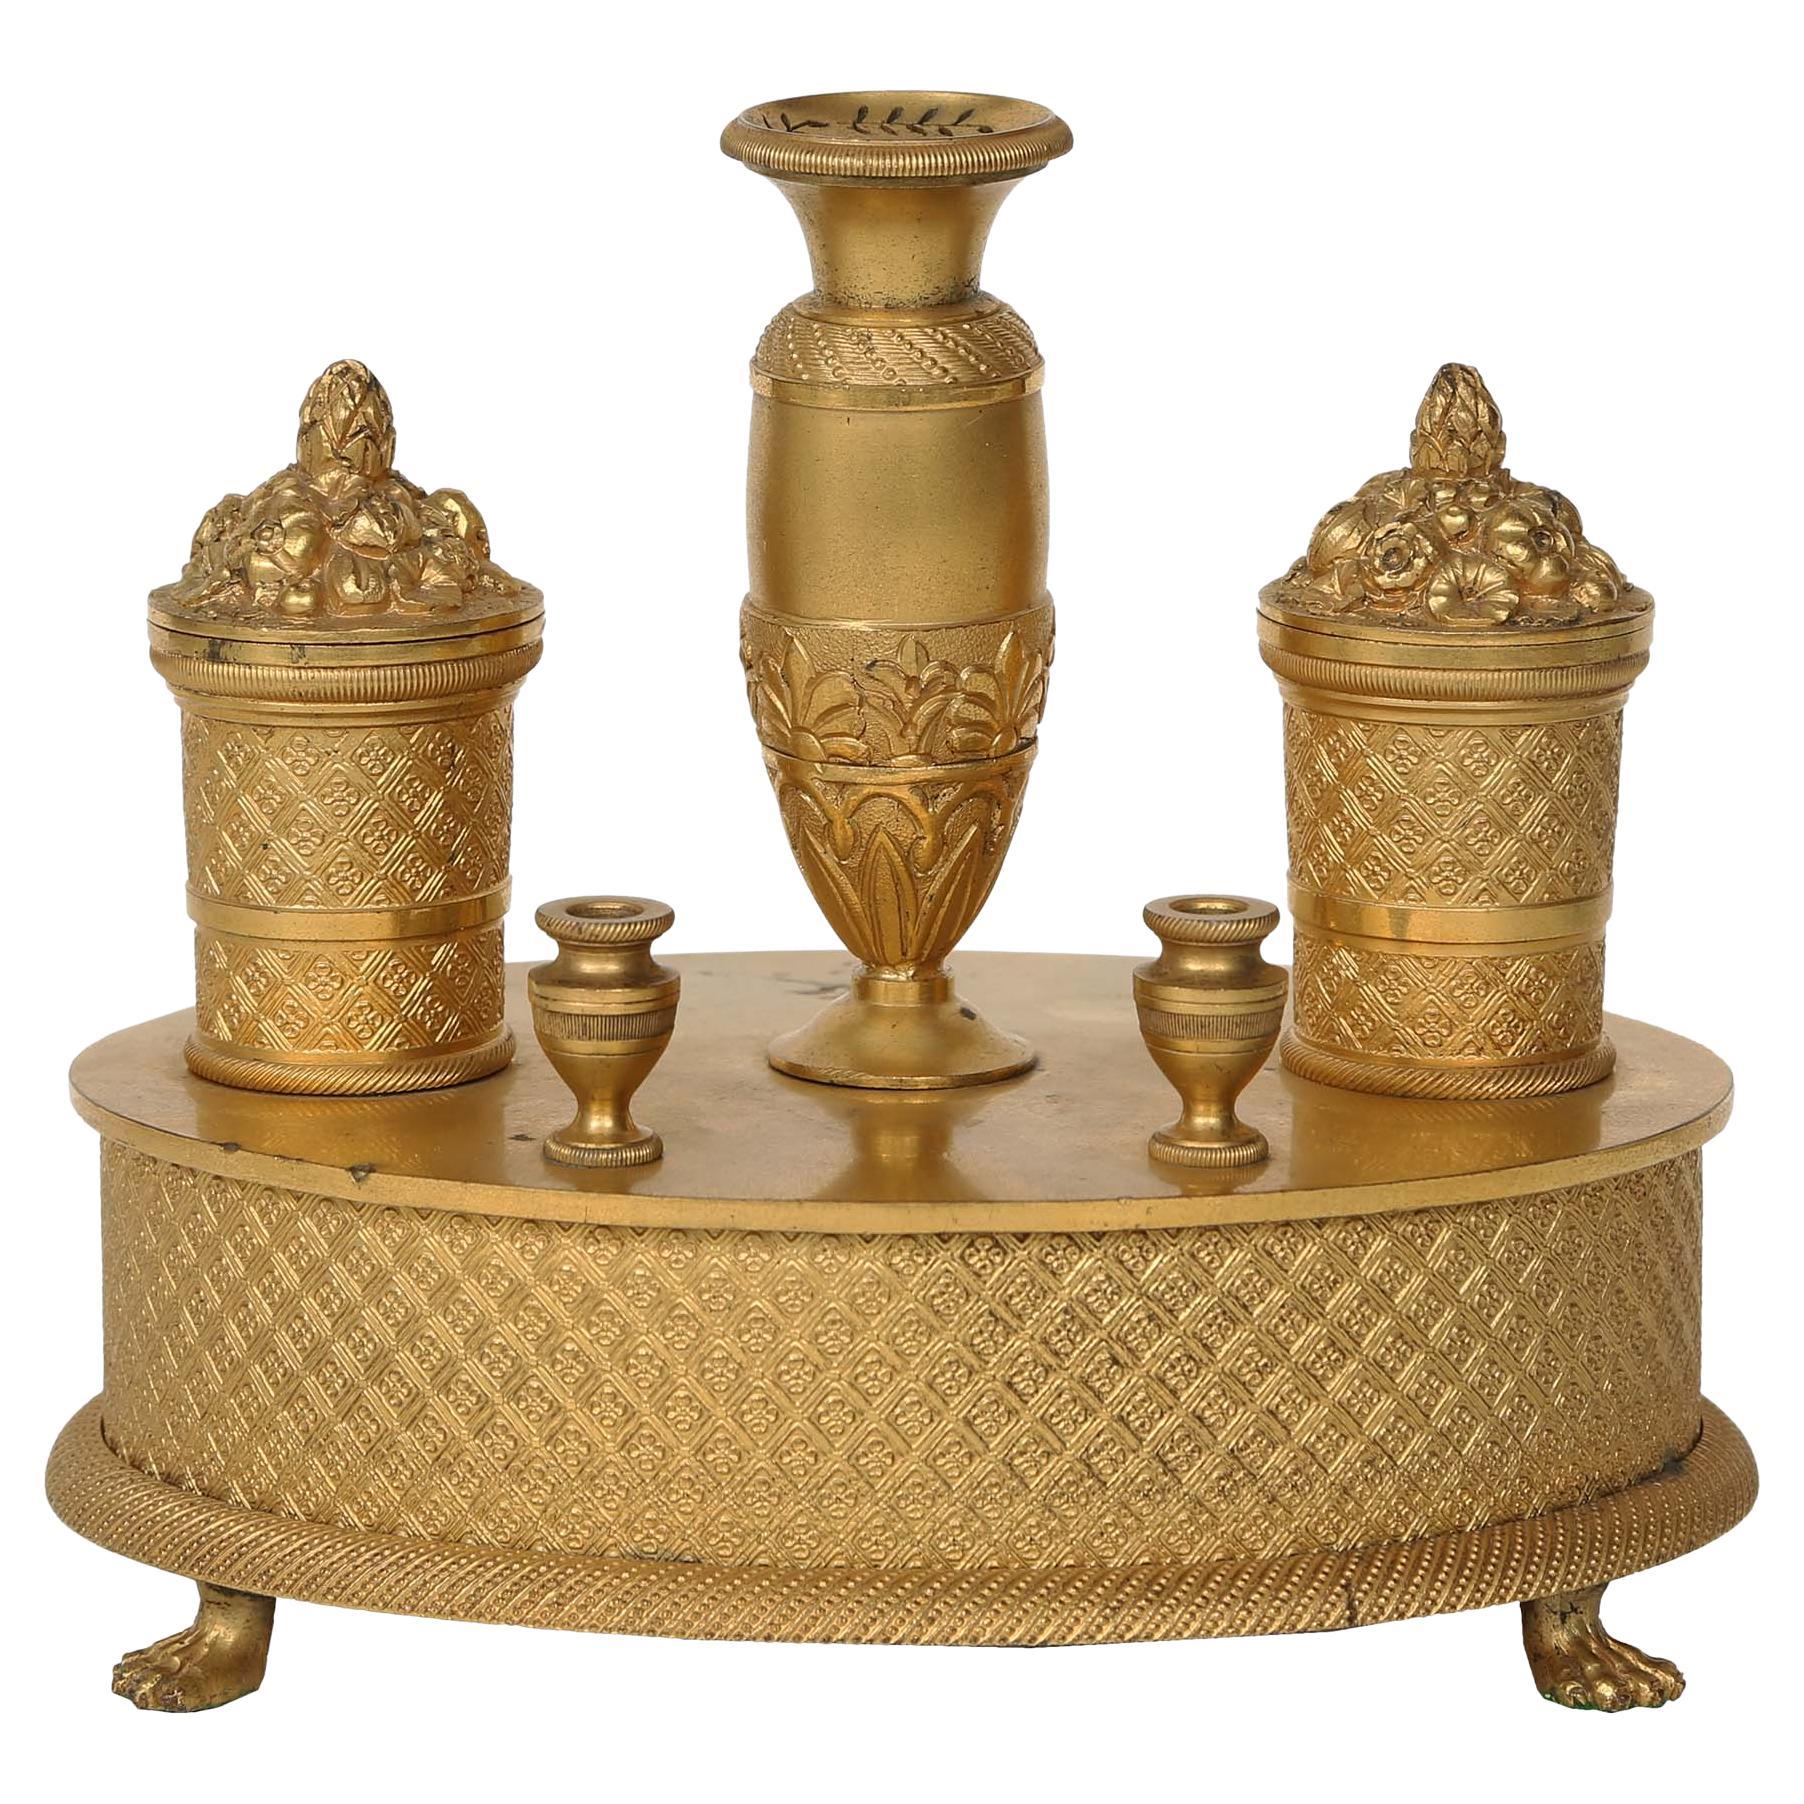 Ovales Goldbronze-Tintenfass im Empire-Stil des 19. Jahrhunderts